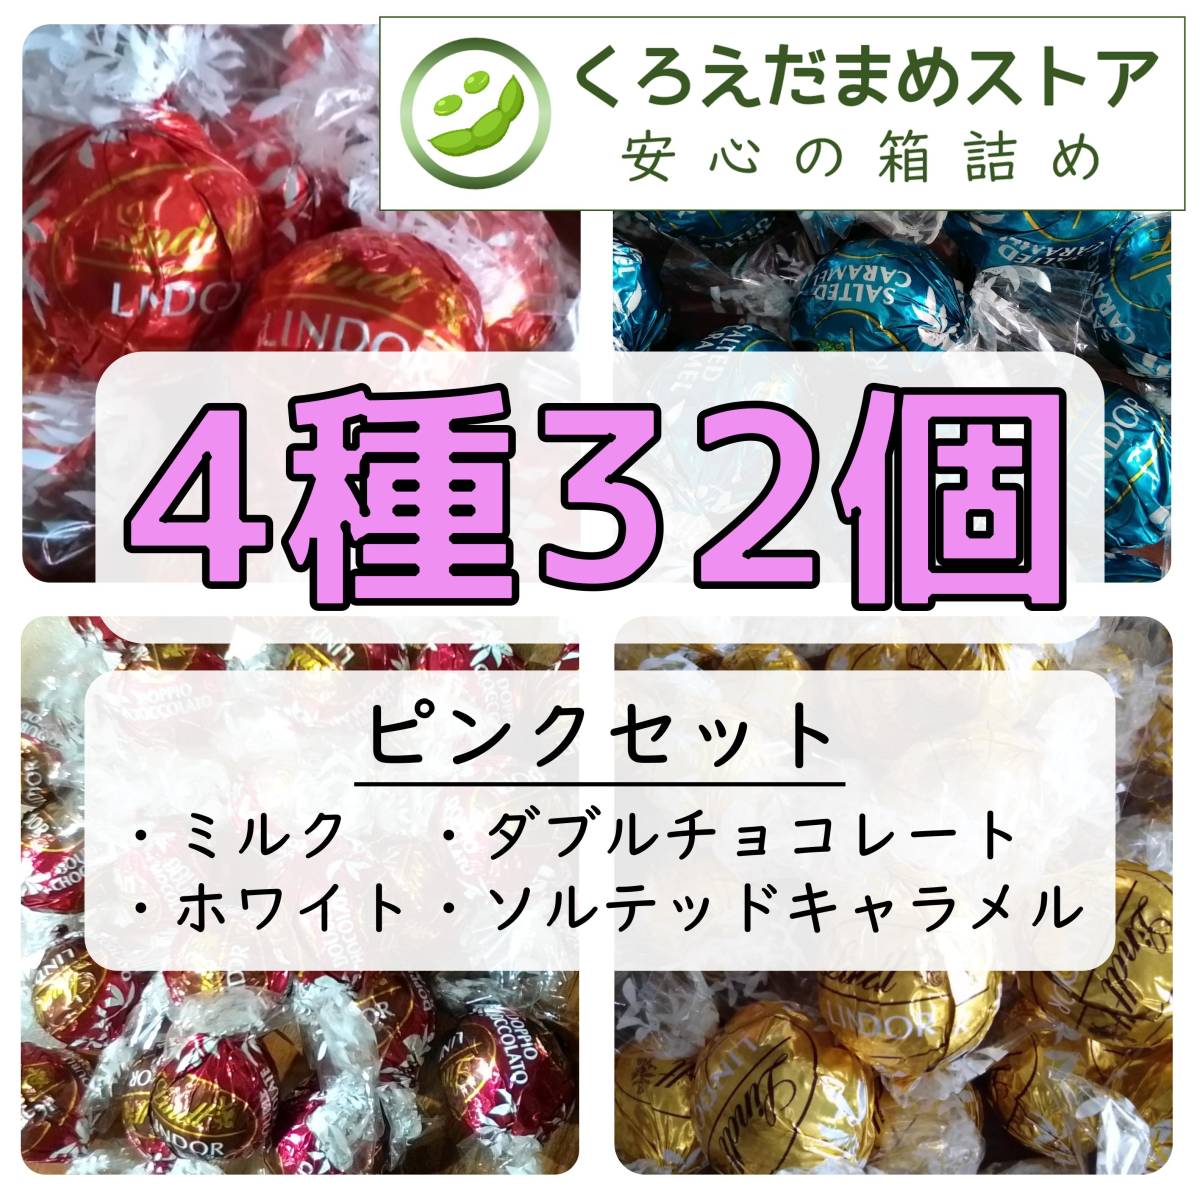 【箱詰・スピード発送】Q32 4種32個 ピンクセット リンツ リンドール チョコレート ジップ袋詰 ダンボール箱梱包 送料無料 くろえだまめ の画像1